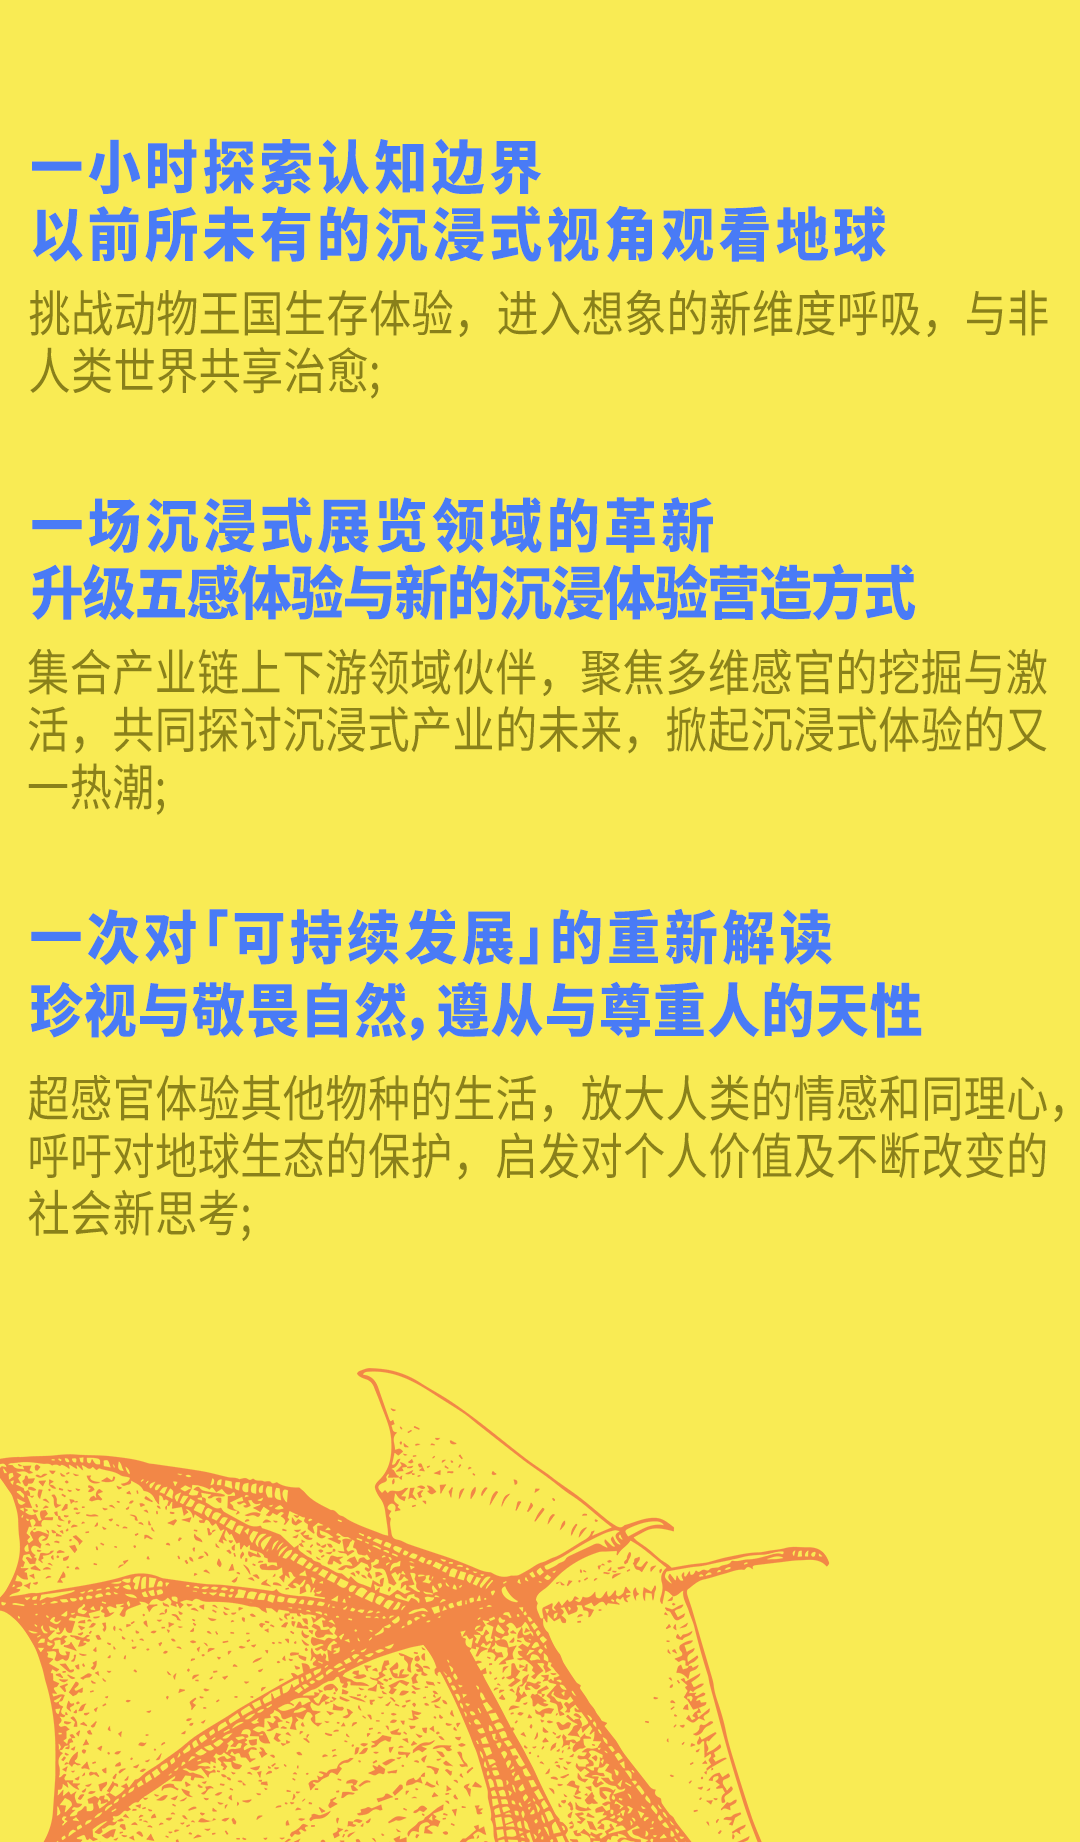 【北京站】地球奇旅——多维感官沉浸体验·中国首展